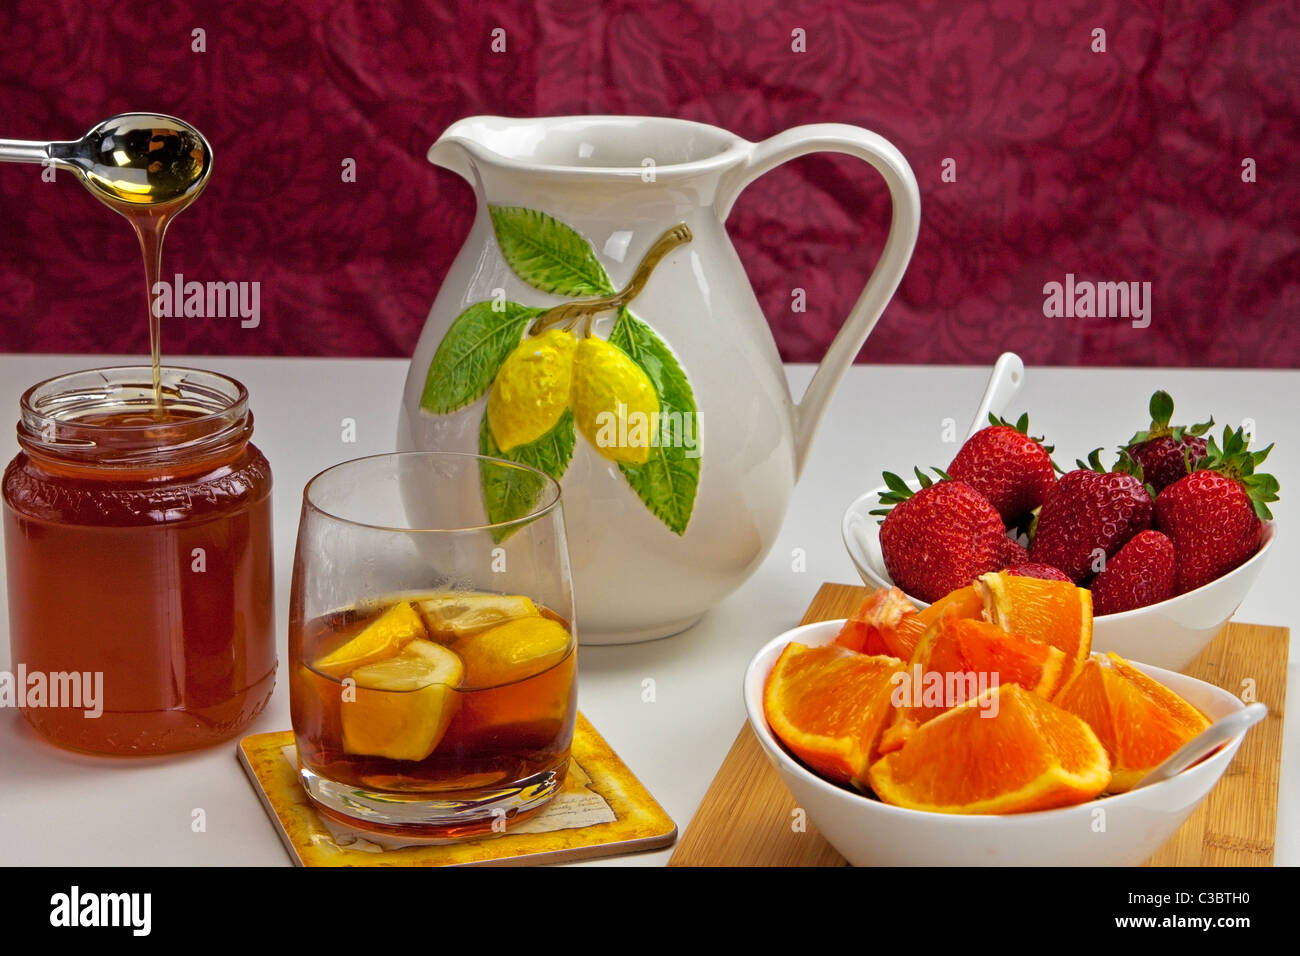 https://c8.alamy.com/comp/C3BTH0/lemon-tea-with-fresh-fruits-C3BTH0.jpg